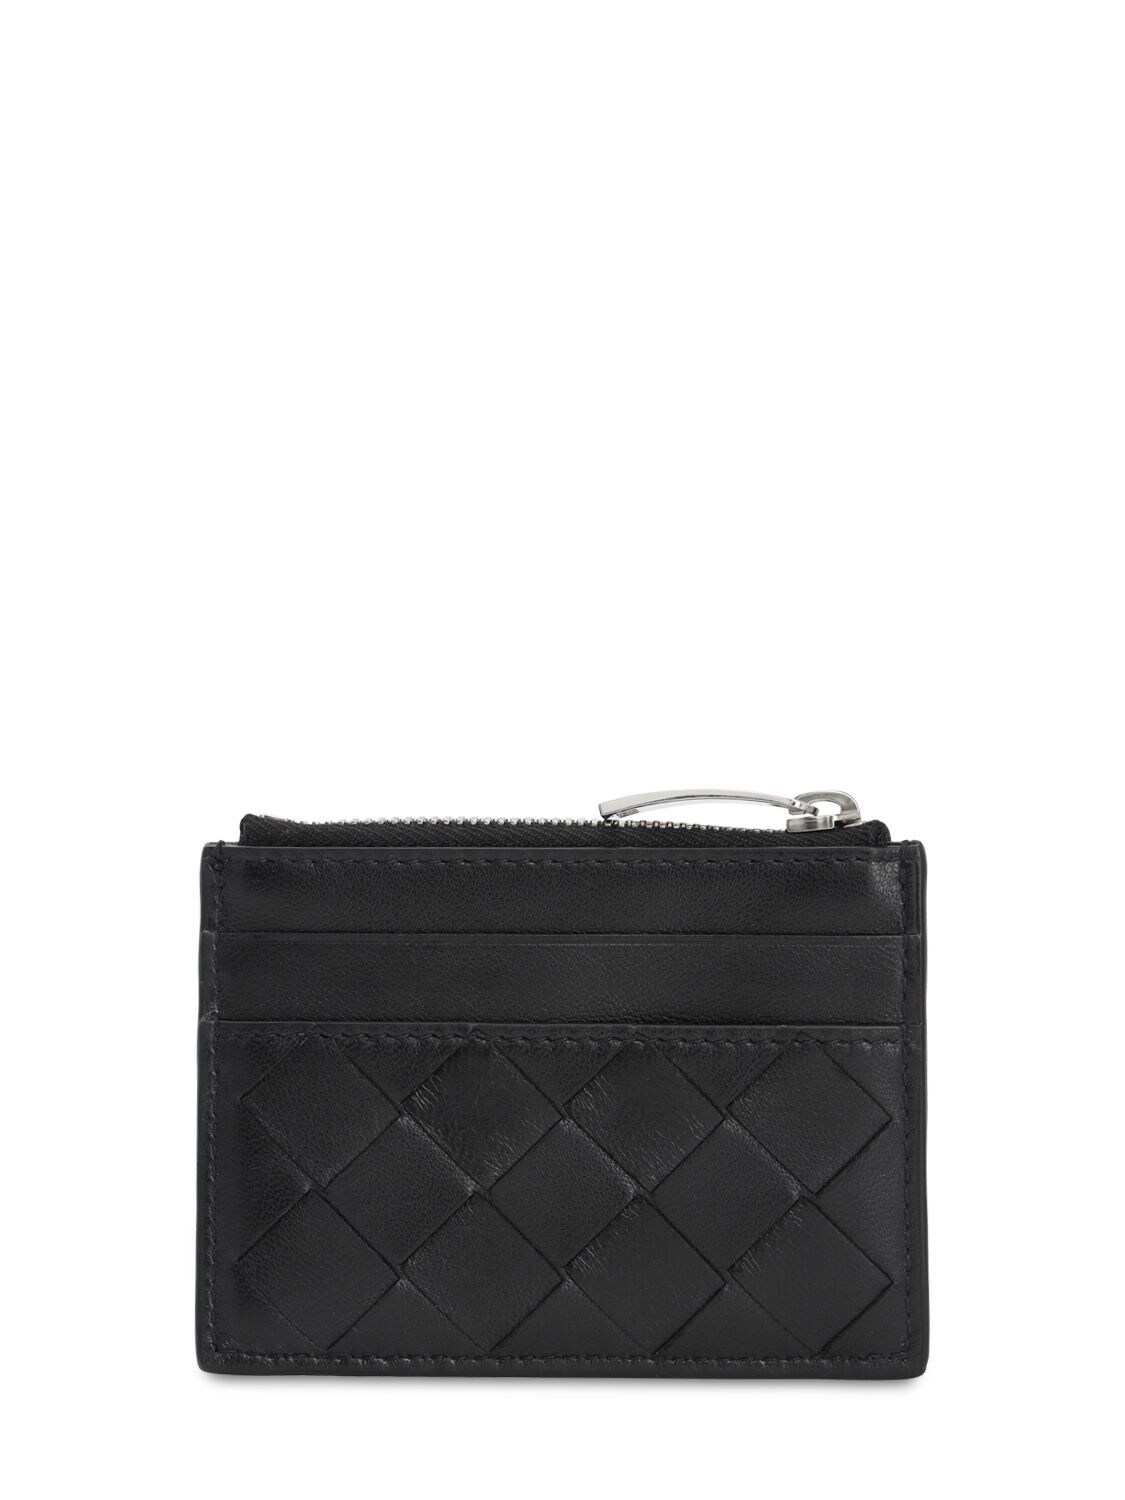 Shop Bottega Veneta Intrecciato Leather Card Holder In Black